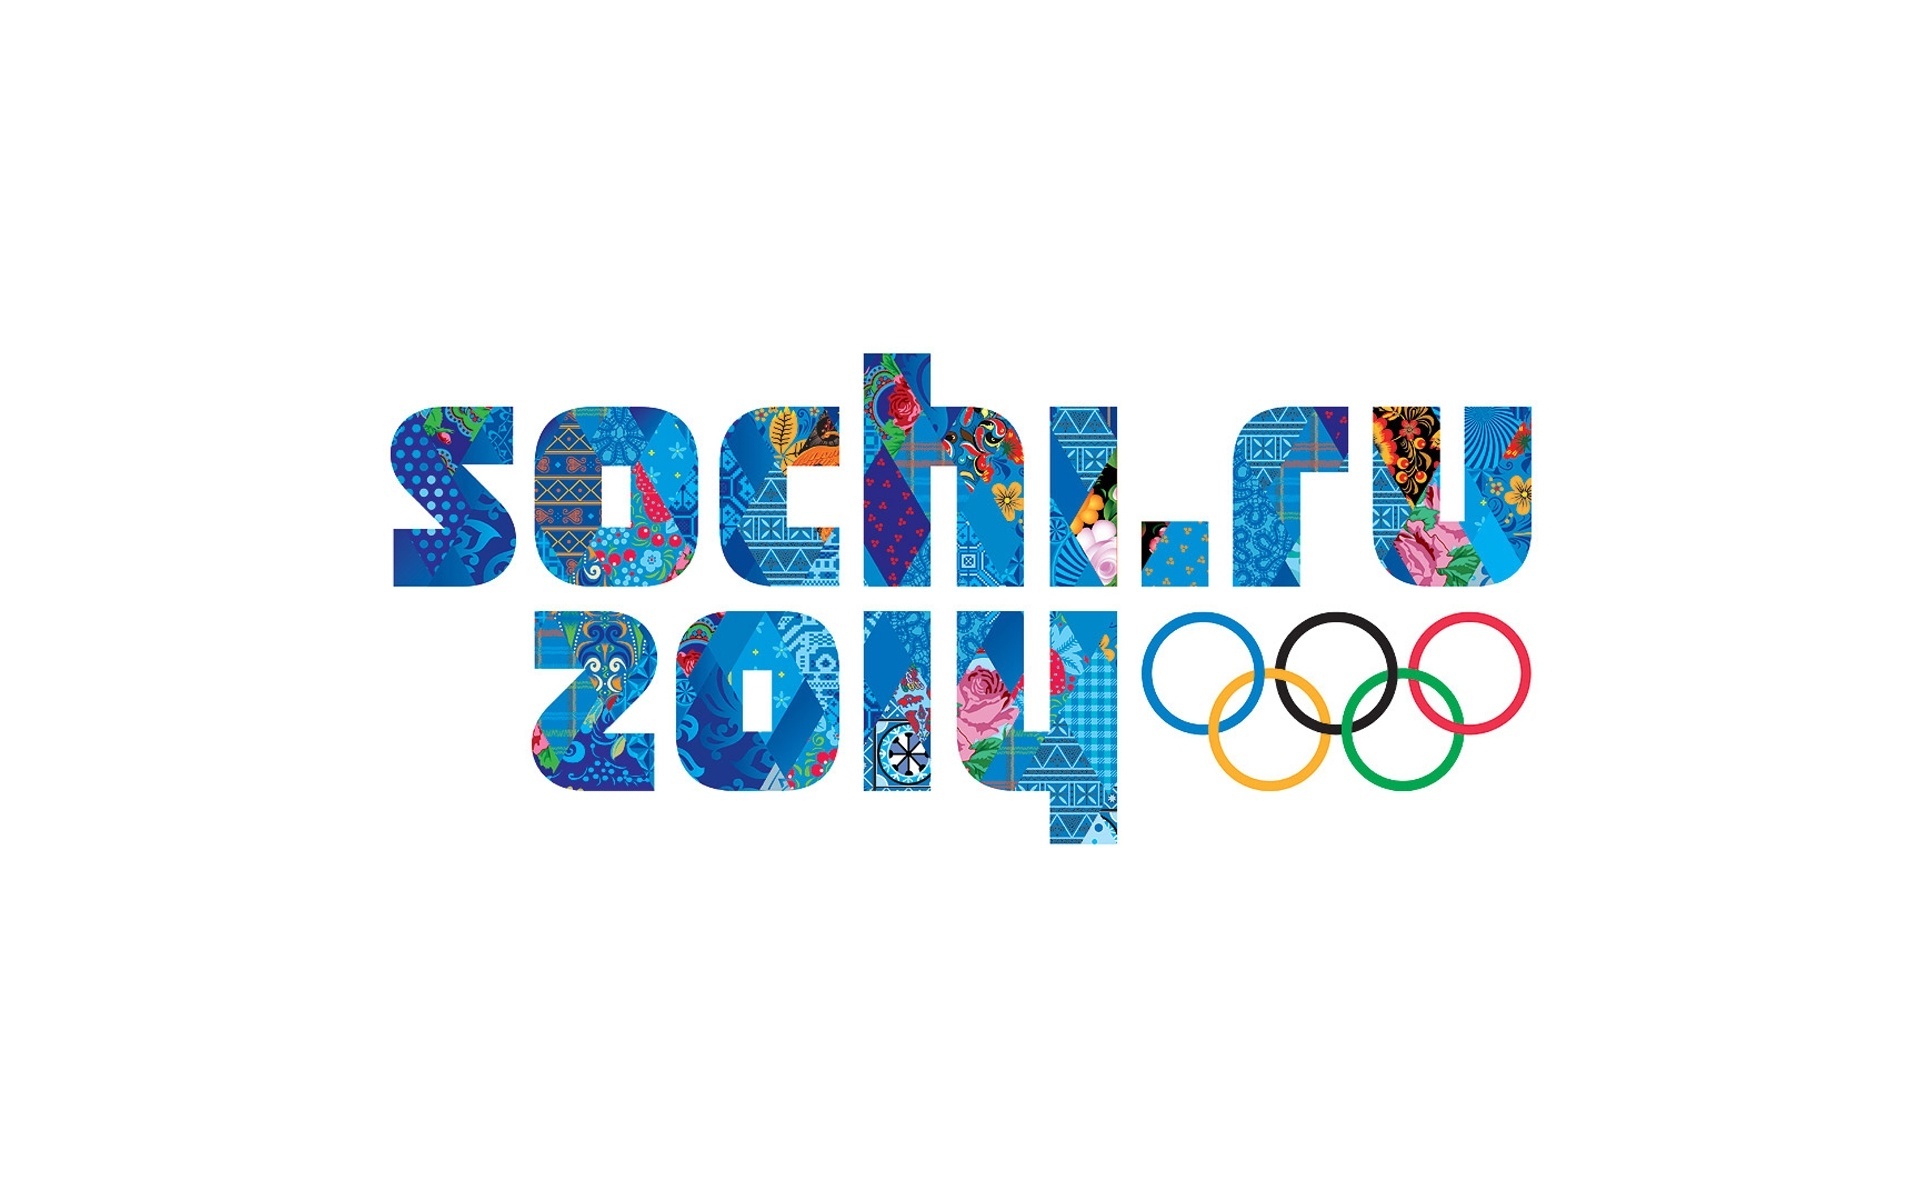 Igrzyska, Olimpijskie, Sochi 2014